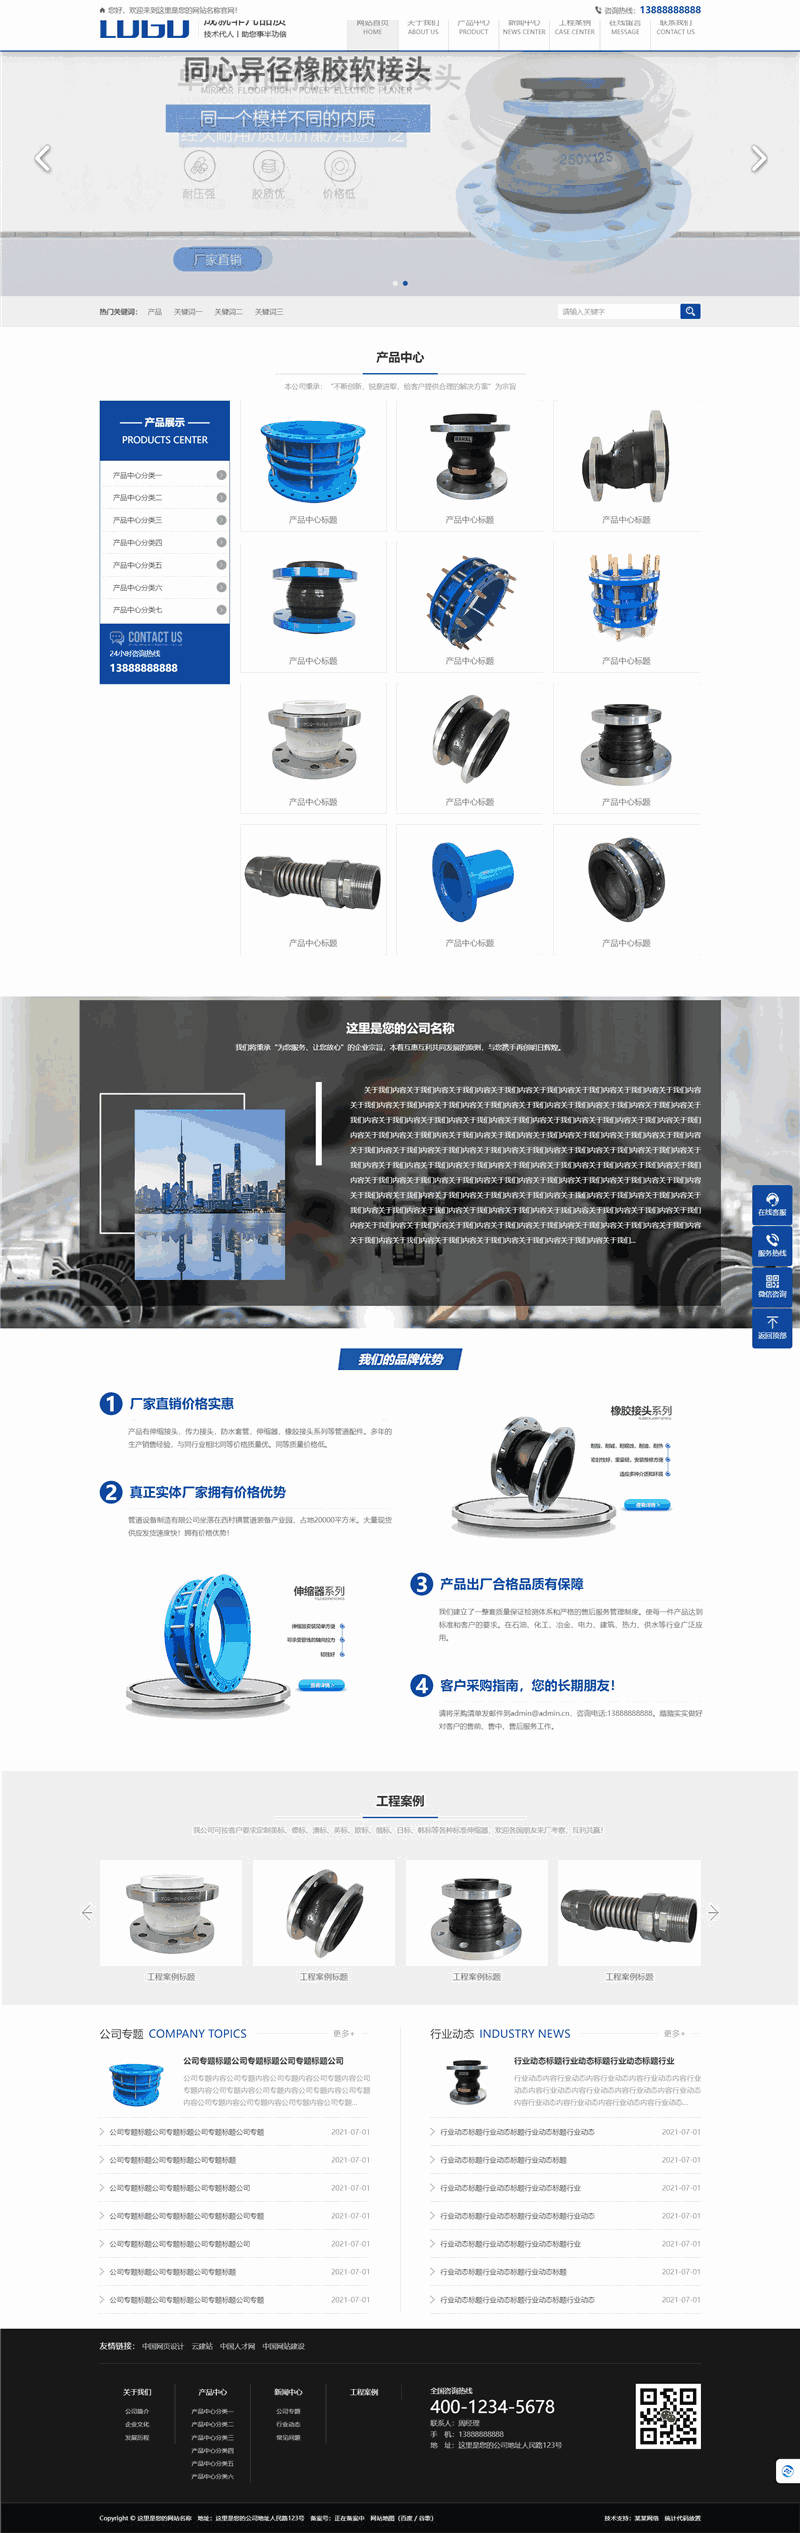 可曲挠橡胶软接头工业设备厂家网站模板预览图